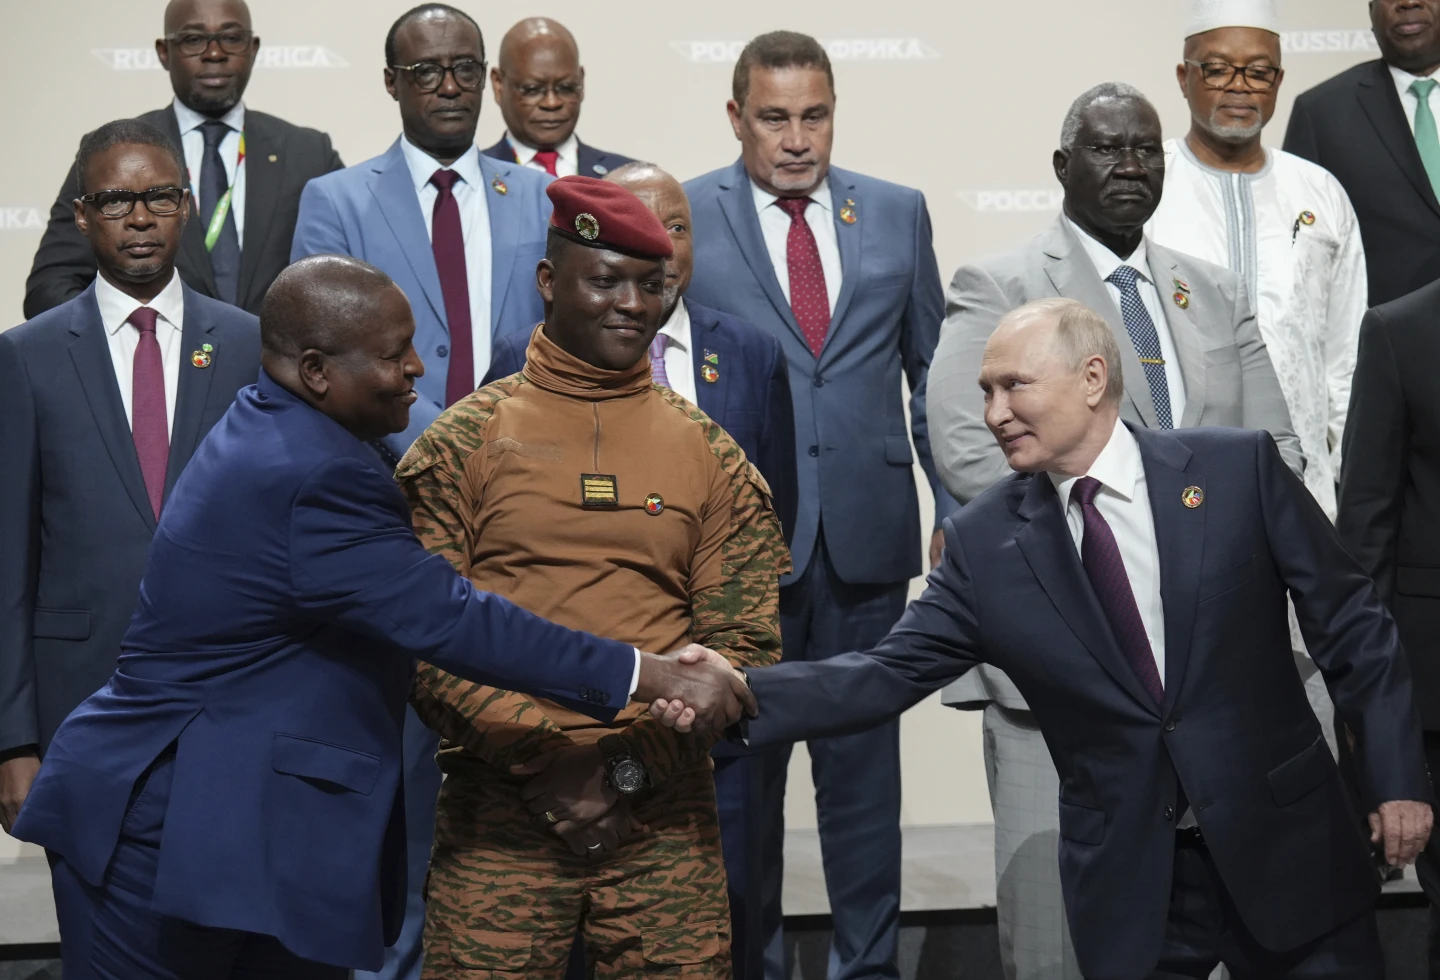 Putini i josh liderët afrikanë në një samit në Rusi me premtime për zgjerimin e tregtisë dhe lidhjeve